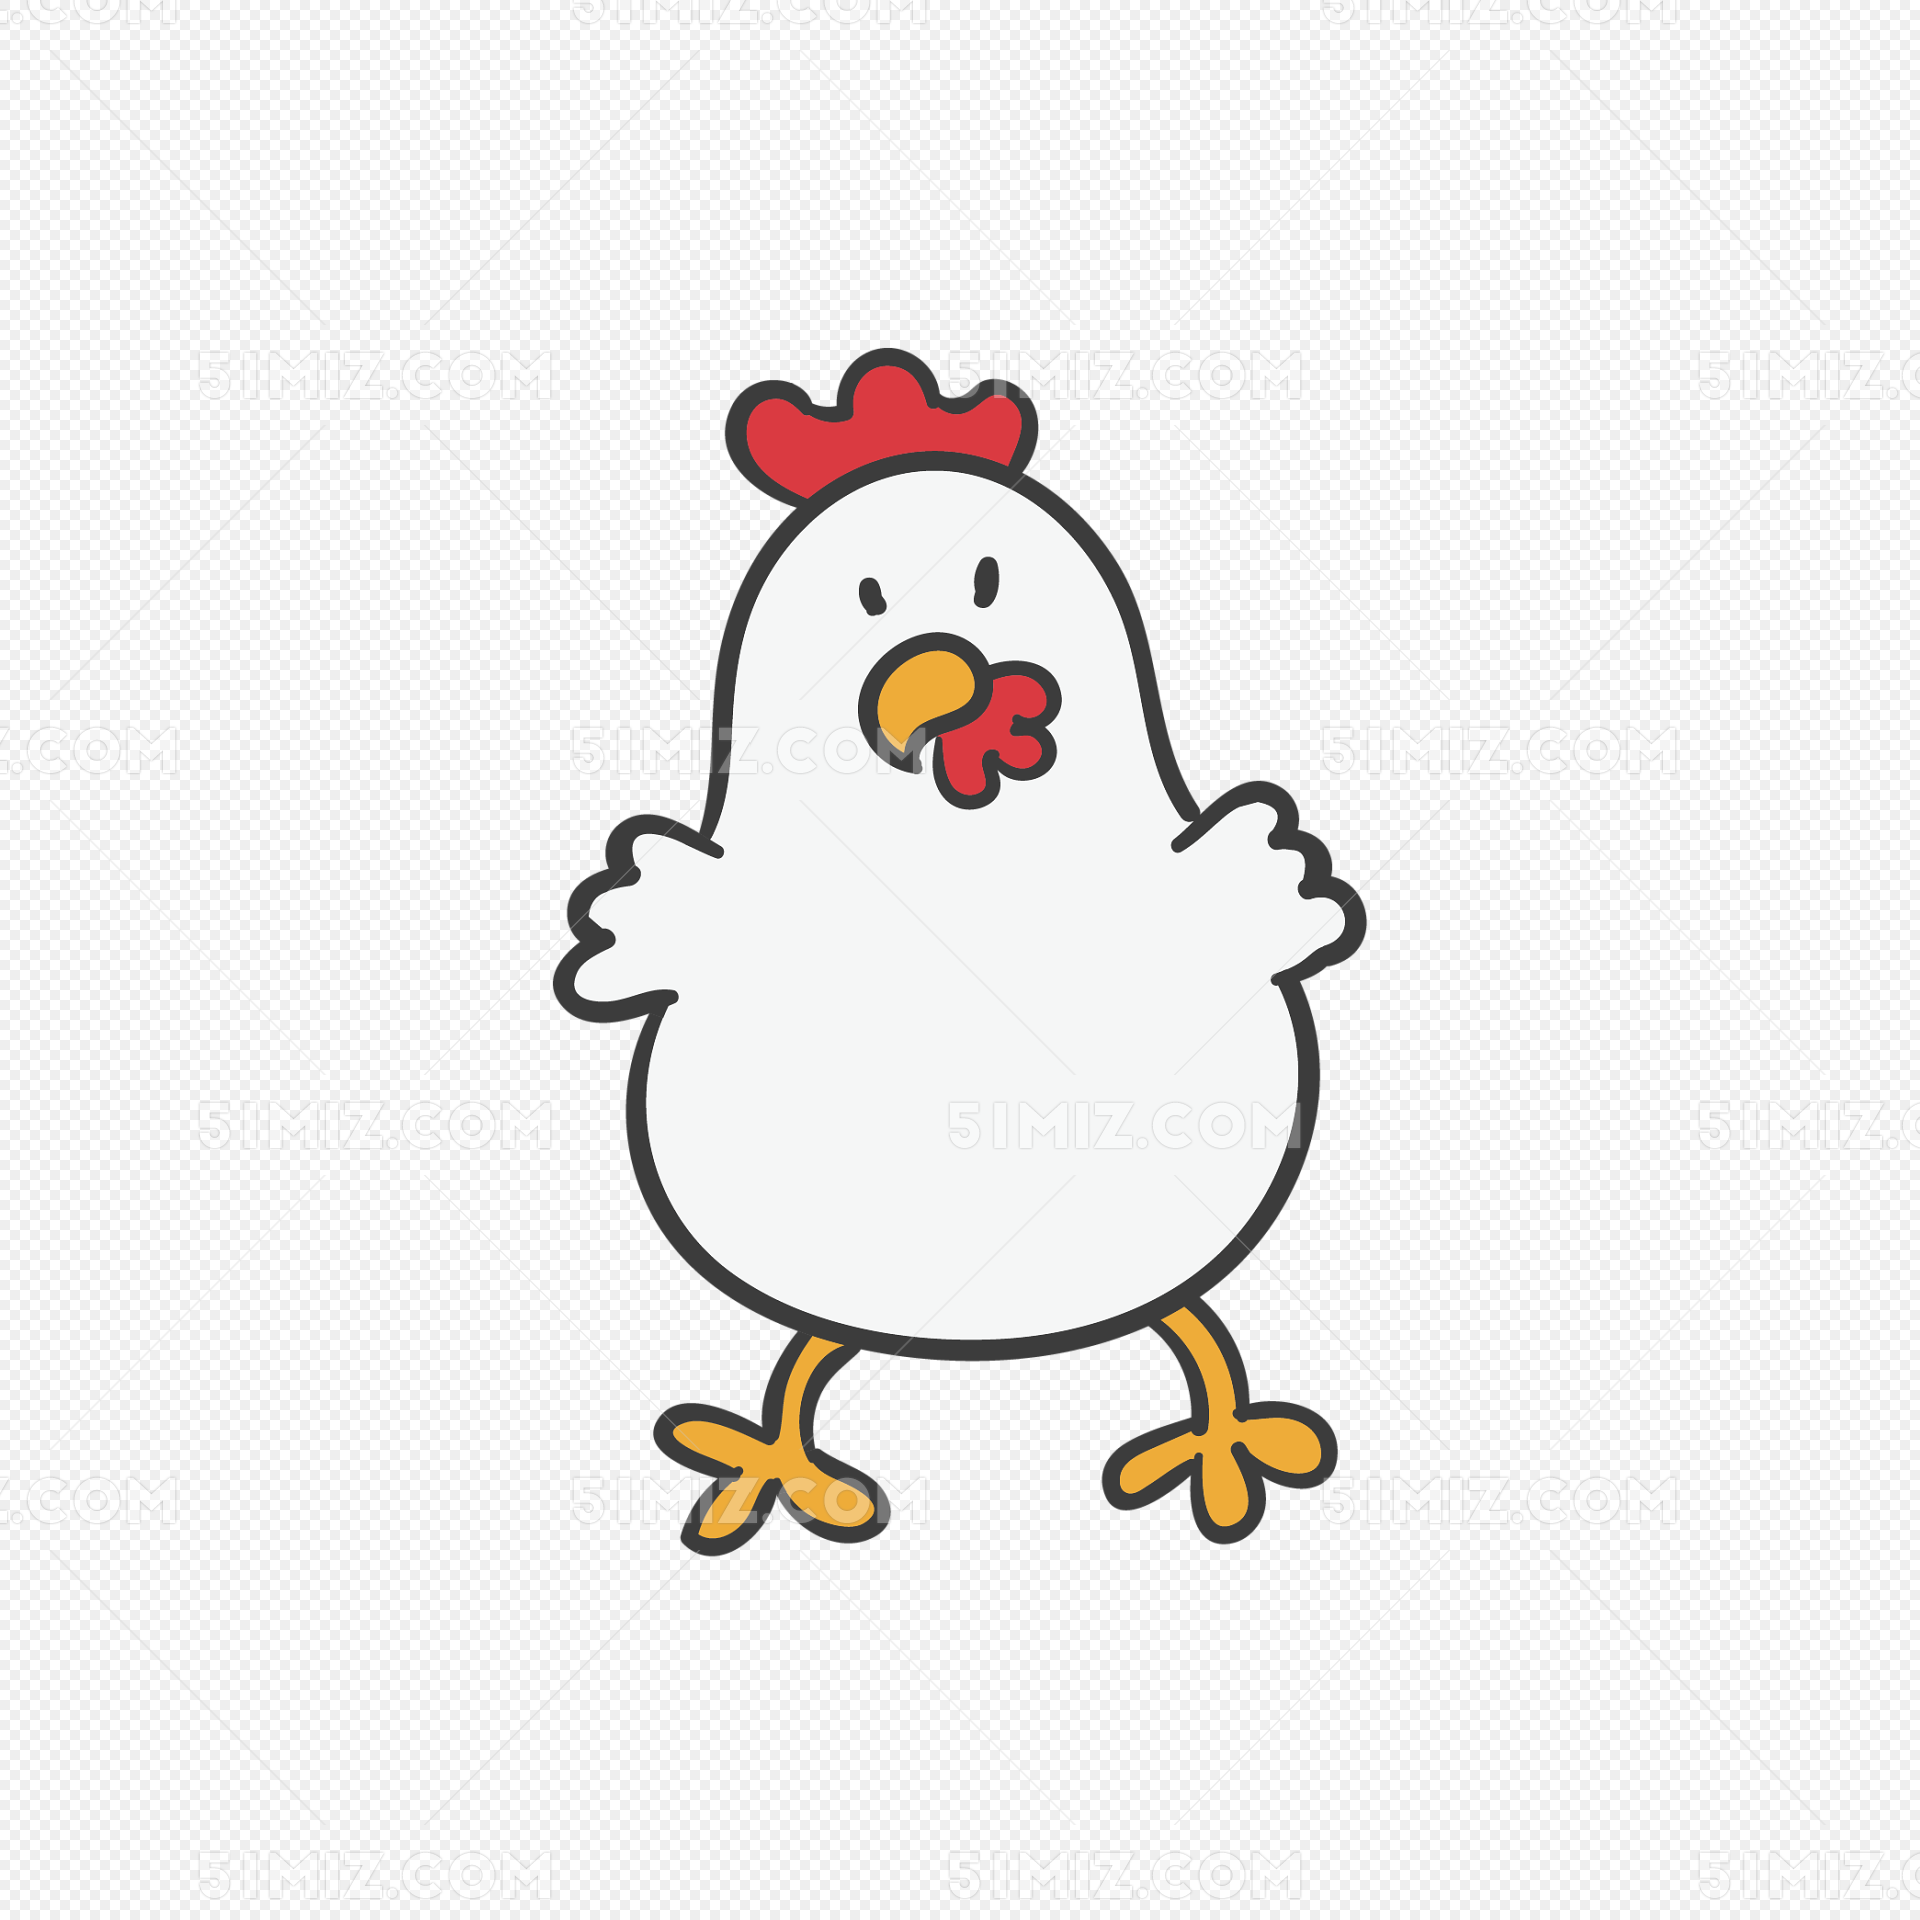 动物简笔画步骤图片大全 有颜色小公鸡的画法图解 肉丁儿童网